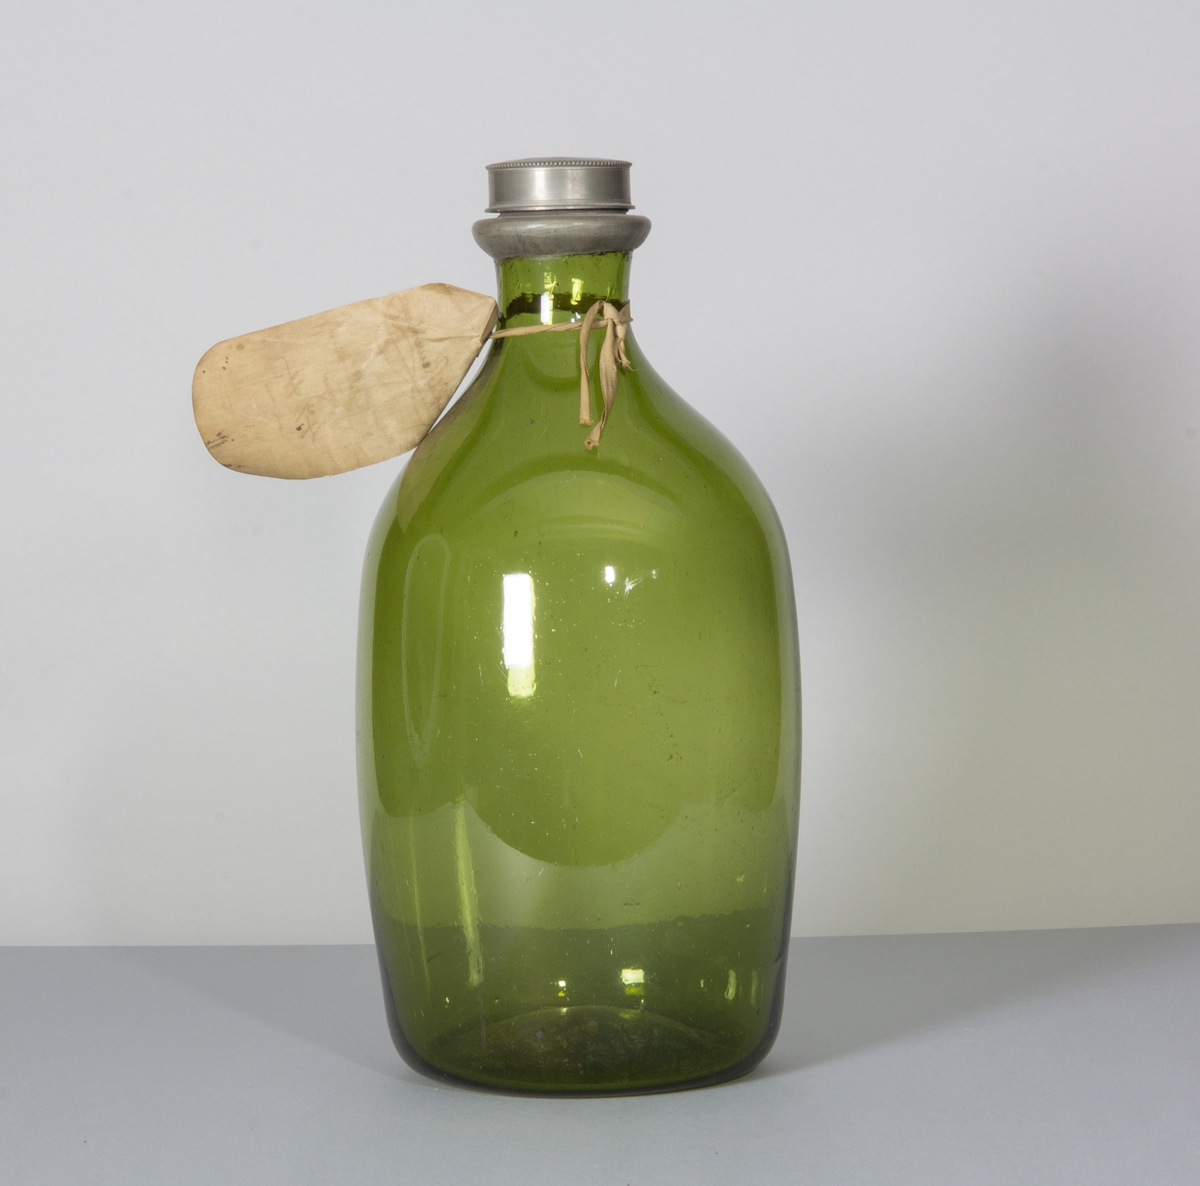 Flaska i glas, ljust grön till färgen. Rundade sidor, bukig, med låg bred hals. Skruvlock i tenn.